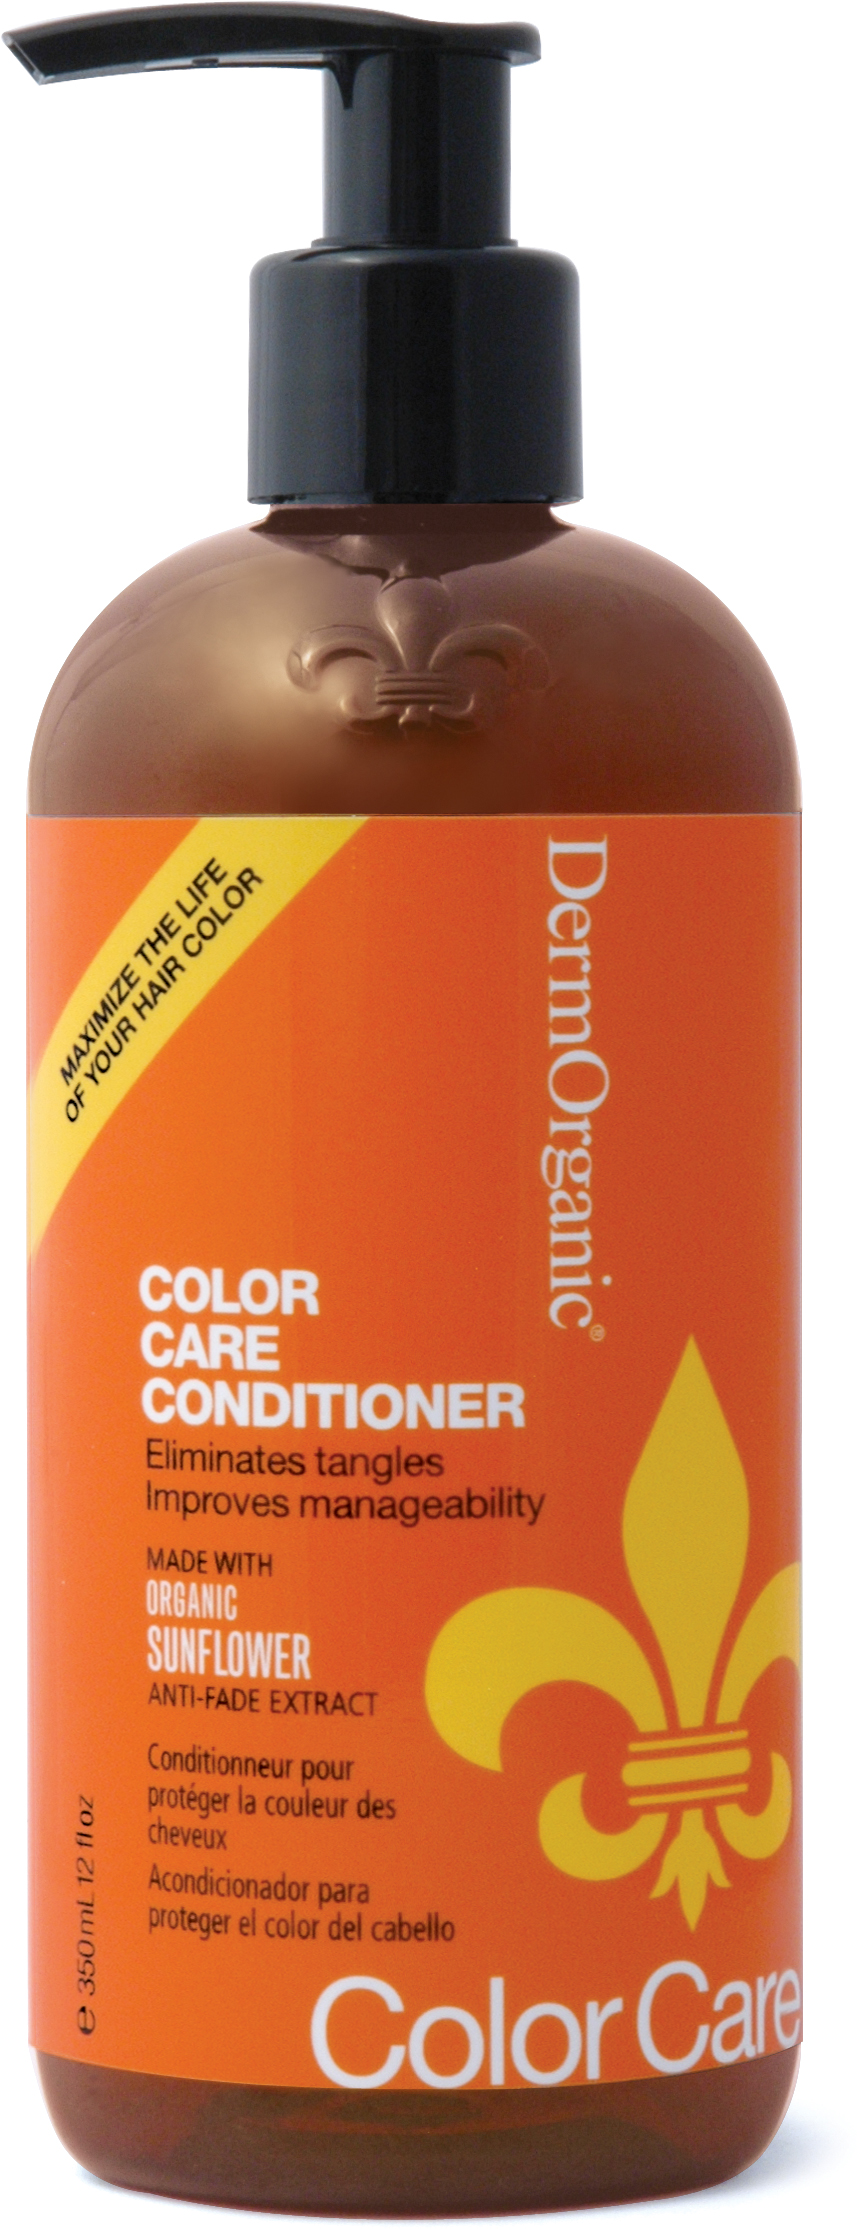 DermOrganic Daily Color Care Conditioner 73% Organic